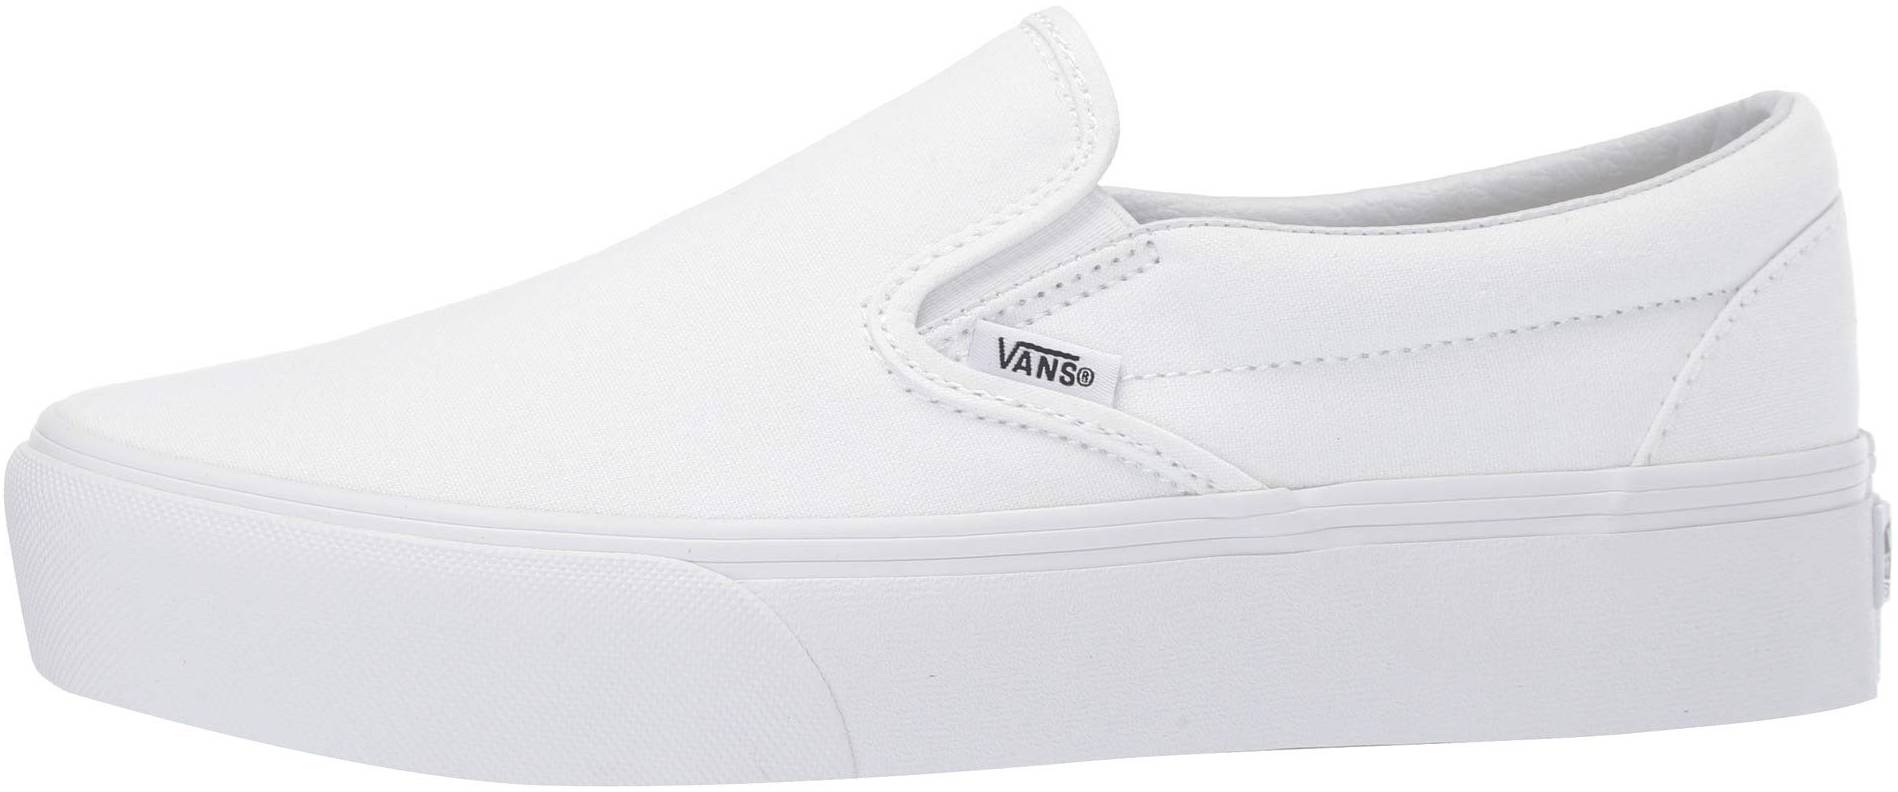 30+ White Vans sneakers | RunRepeat